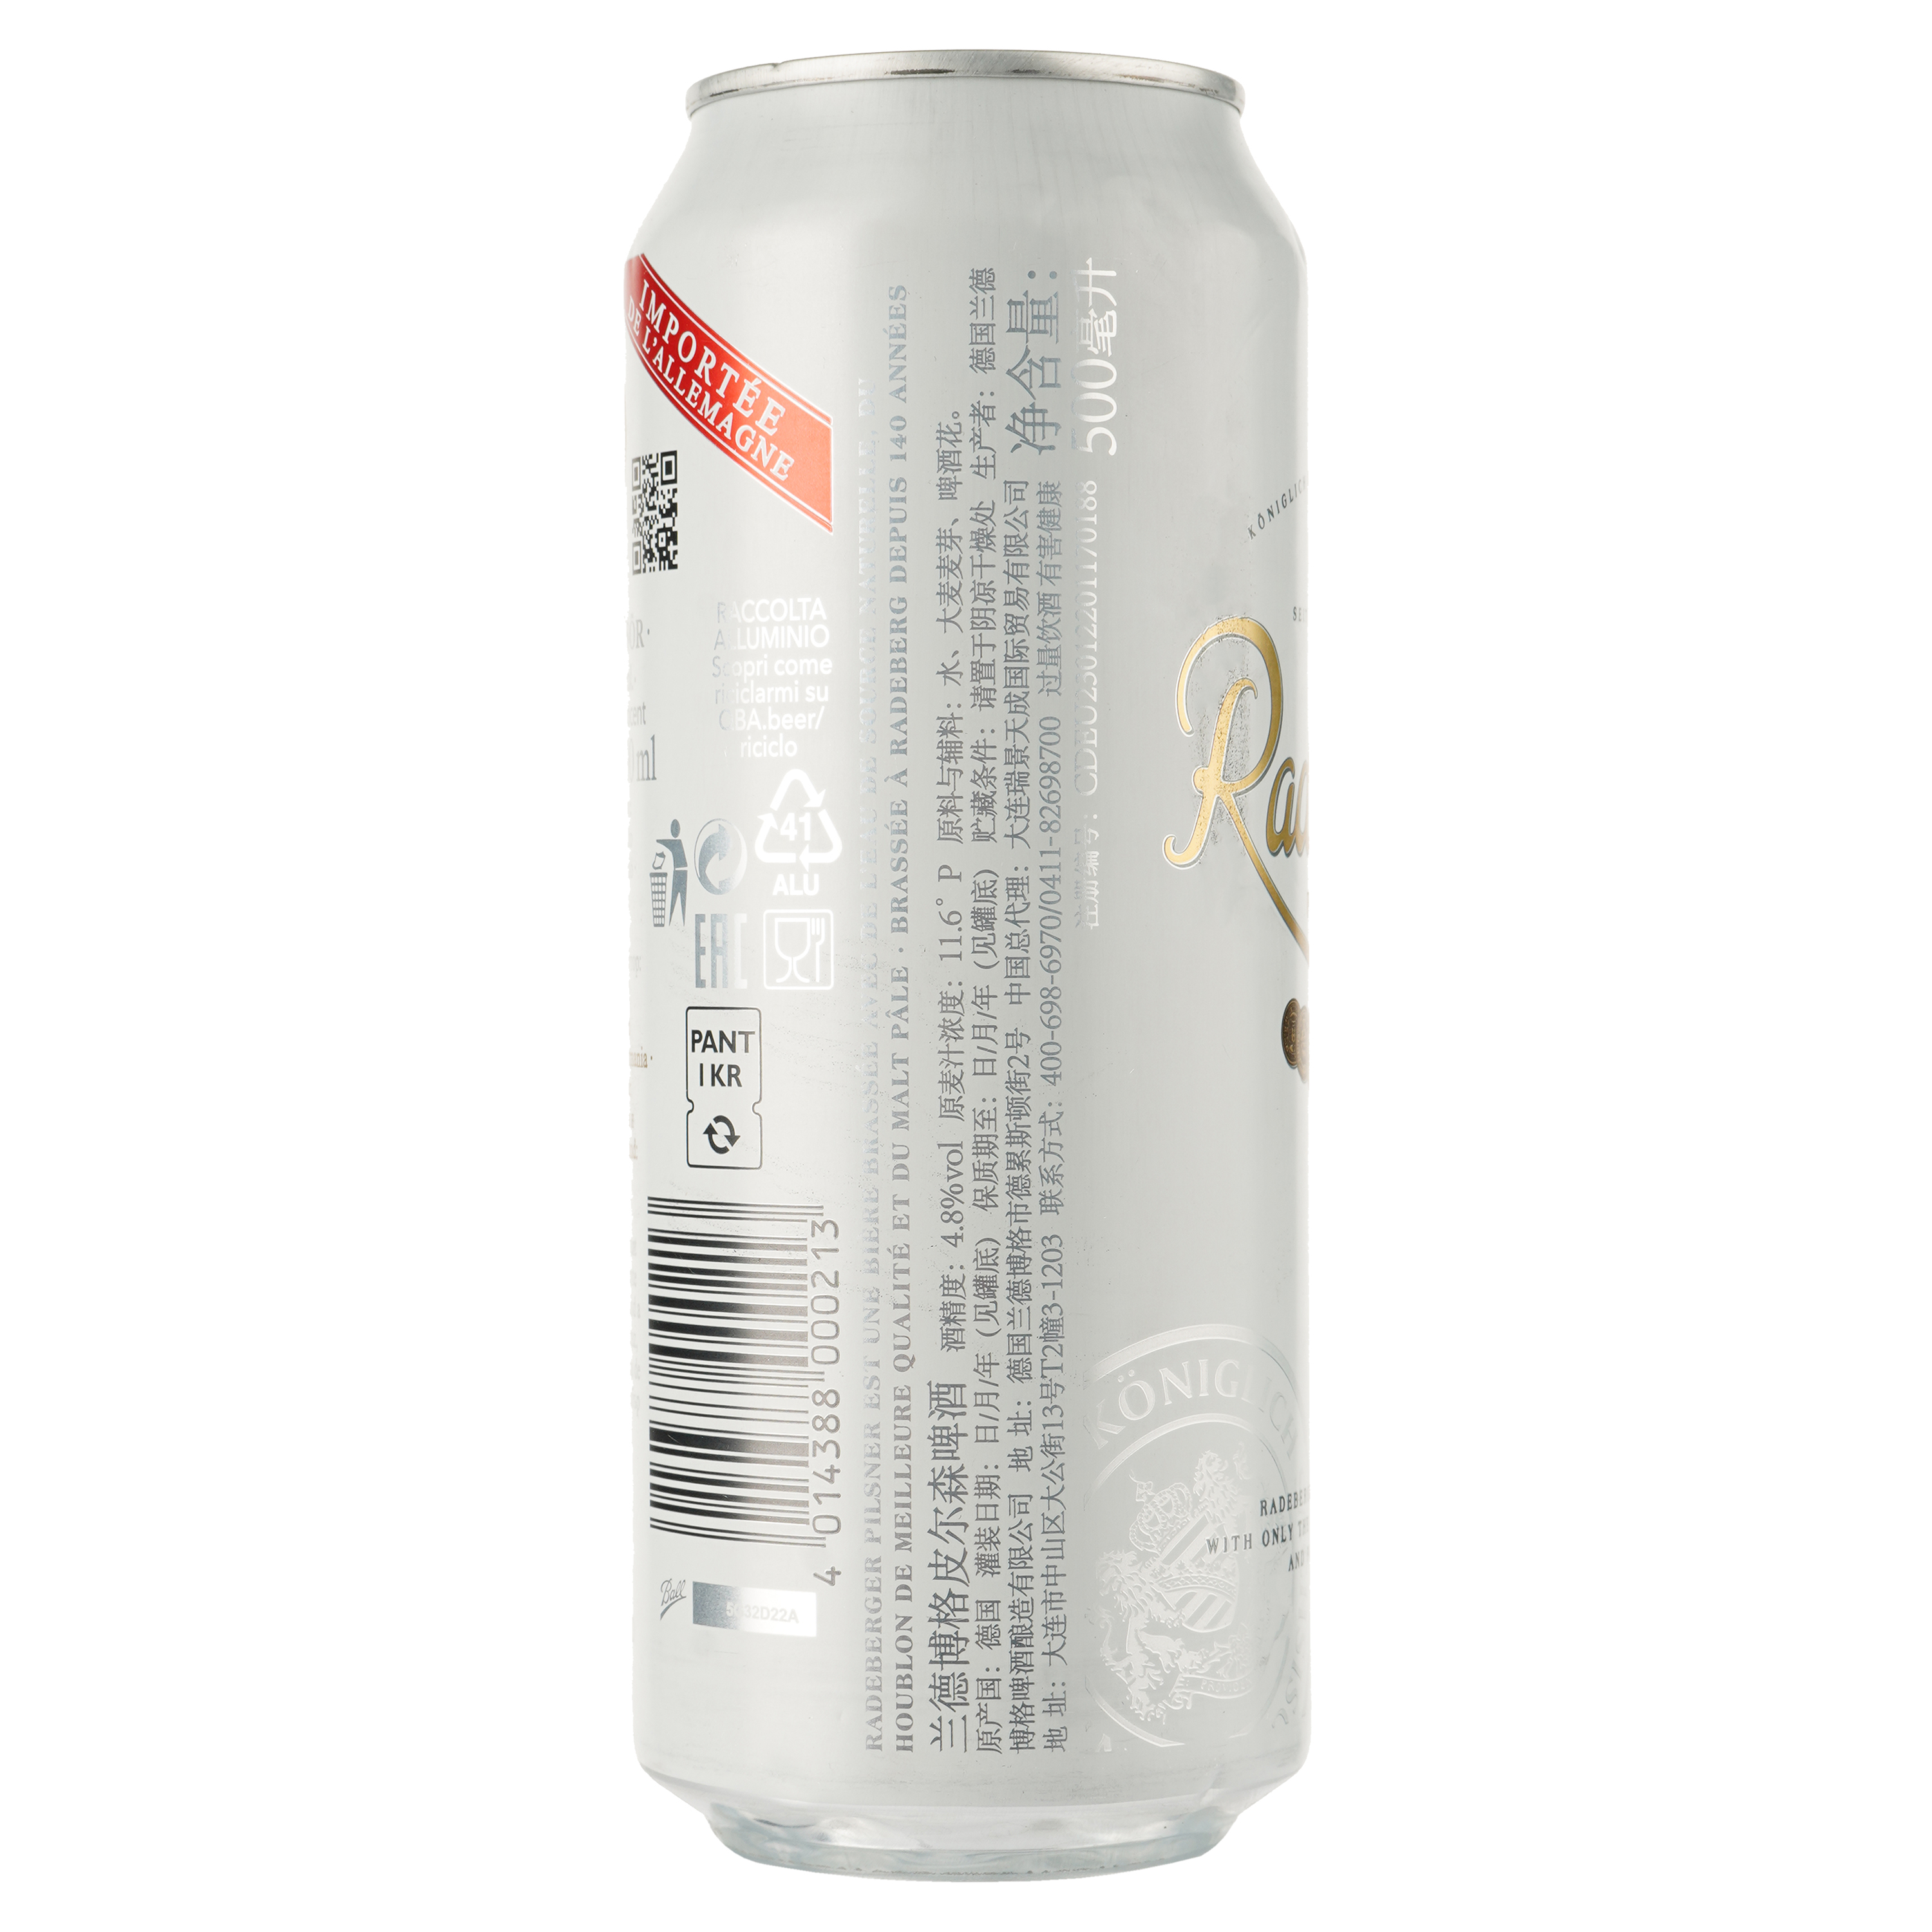 Пиво Radeberger светлое, 4.8%, ж/б, 0.5 л - фото 2